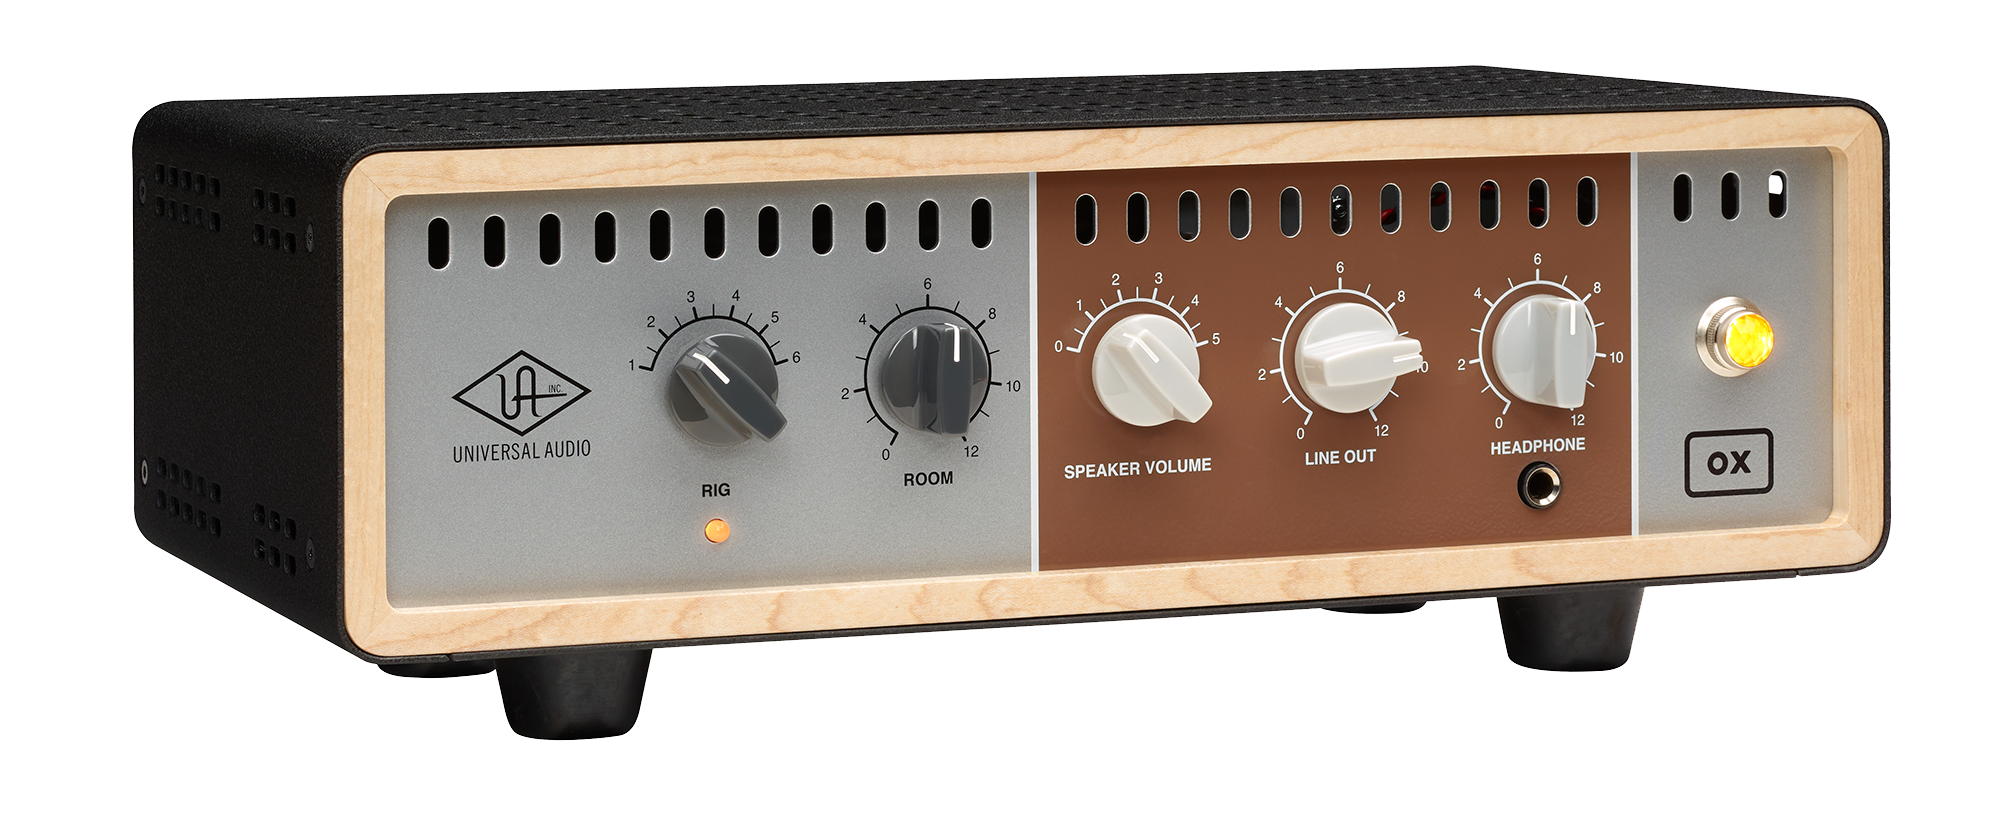 Universal Audio Ox Amp Top Box - Attenuateur De Puissance - Variation 2